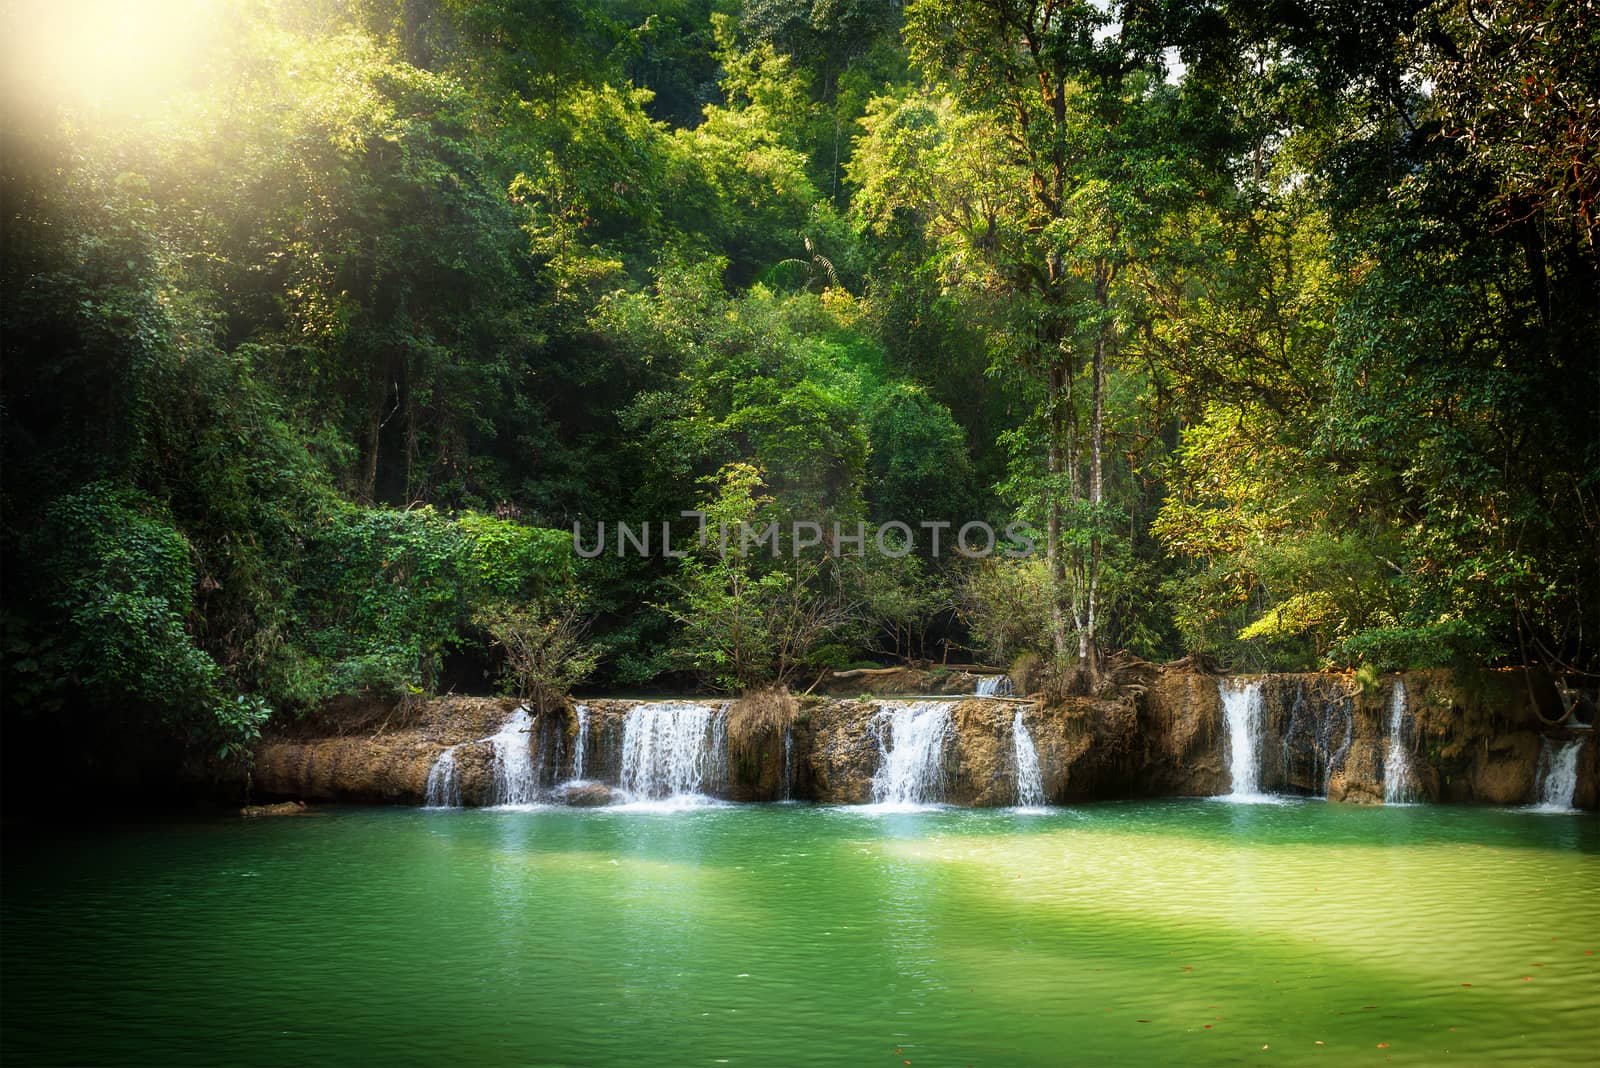 beautiful waterfall in Umphang Wildlife Sanctuary (near Thi Lo Su or Tee Lor Su waterfall)